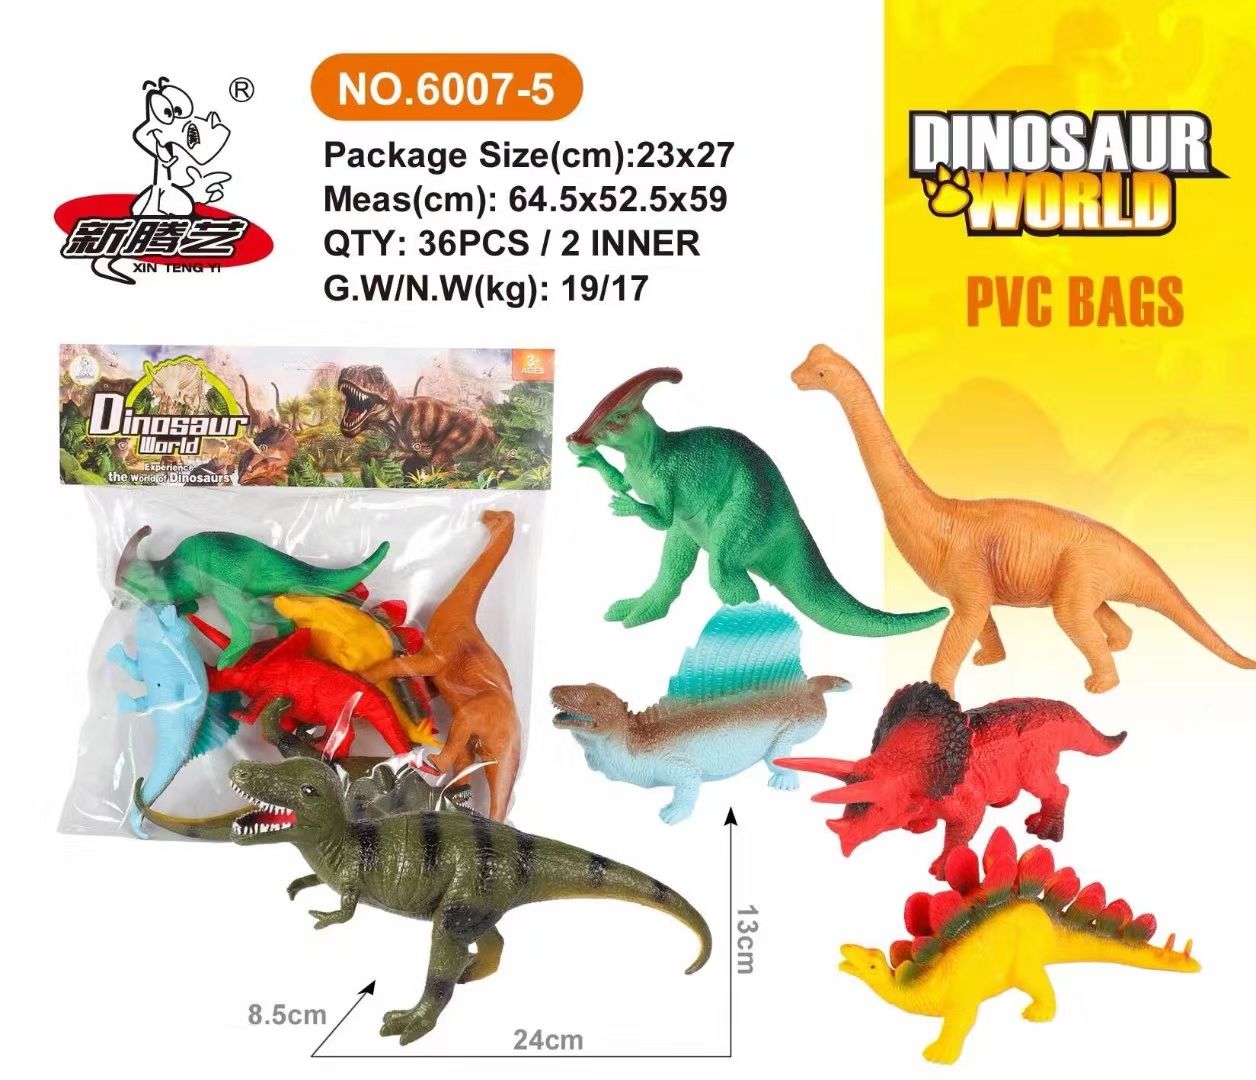 袋装软胶恐龙玩具模型图